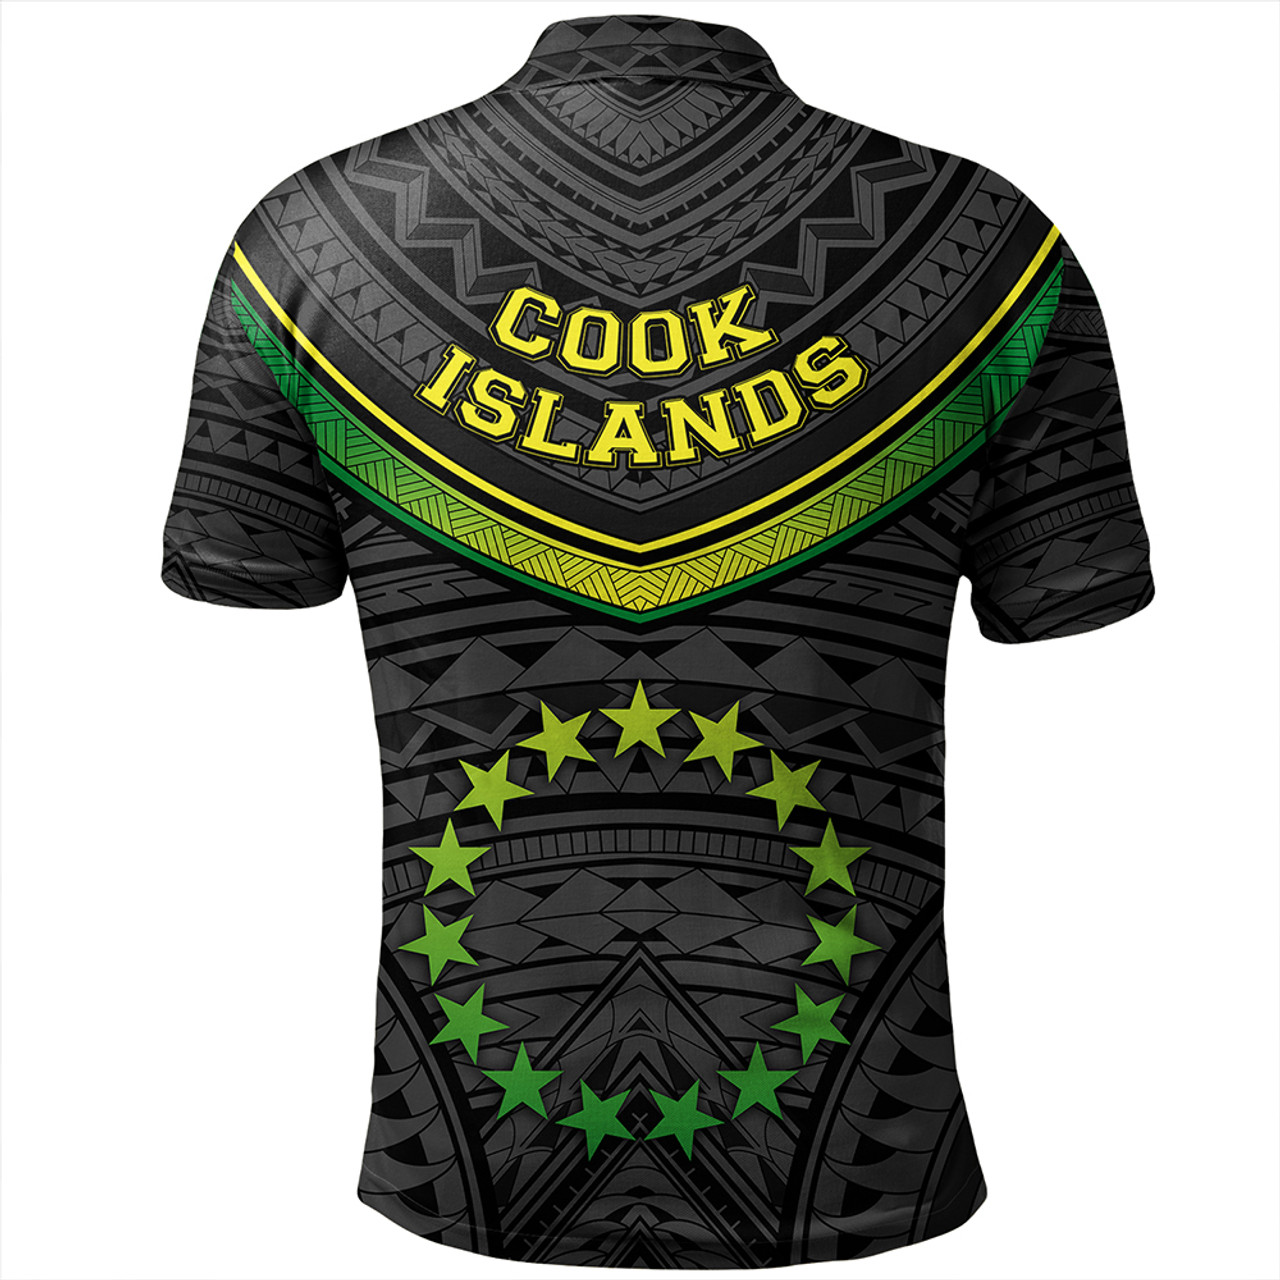 Cook Islands Polo Shirt Polynesian Authen